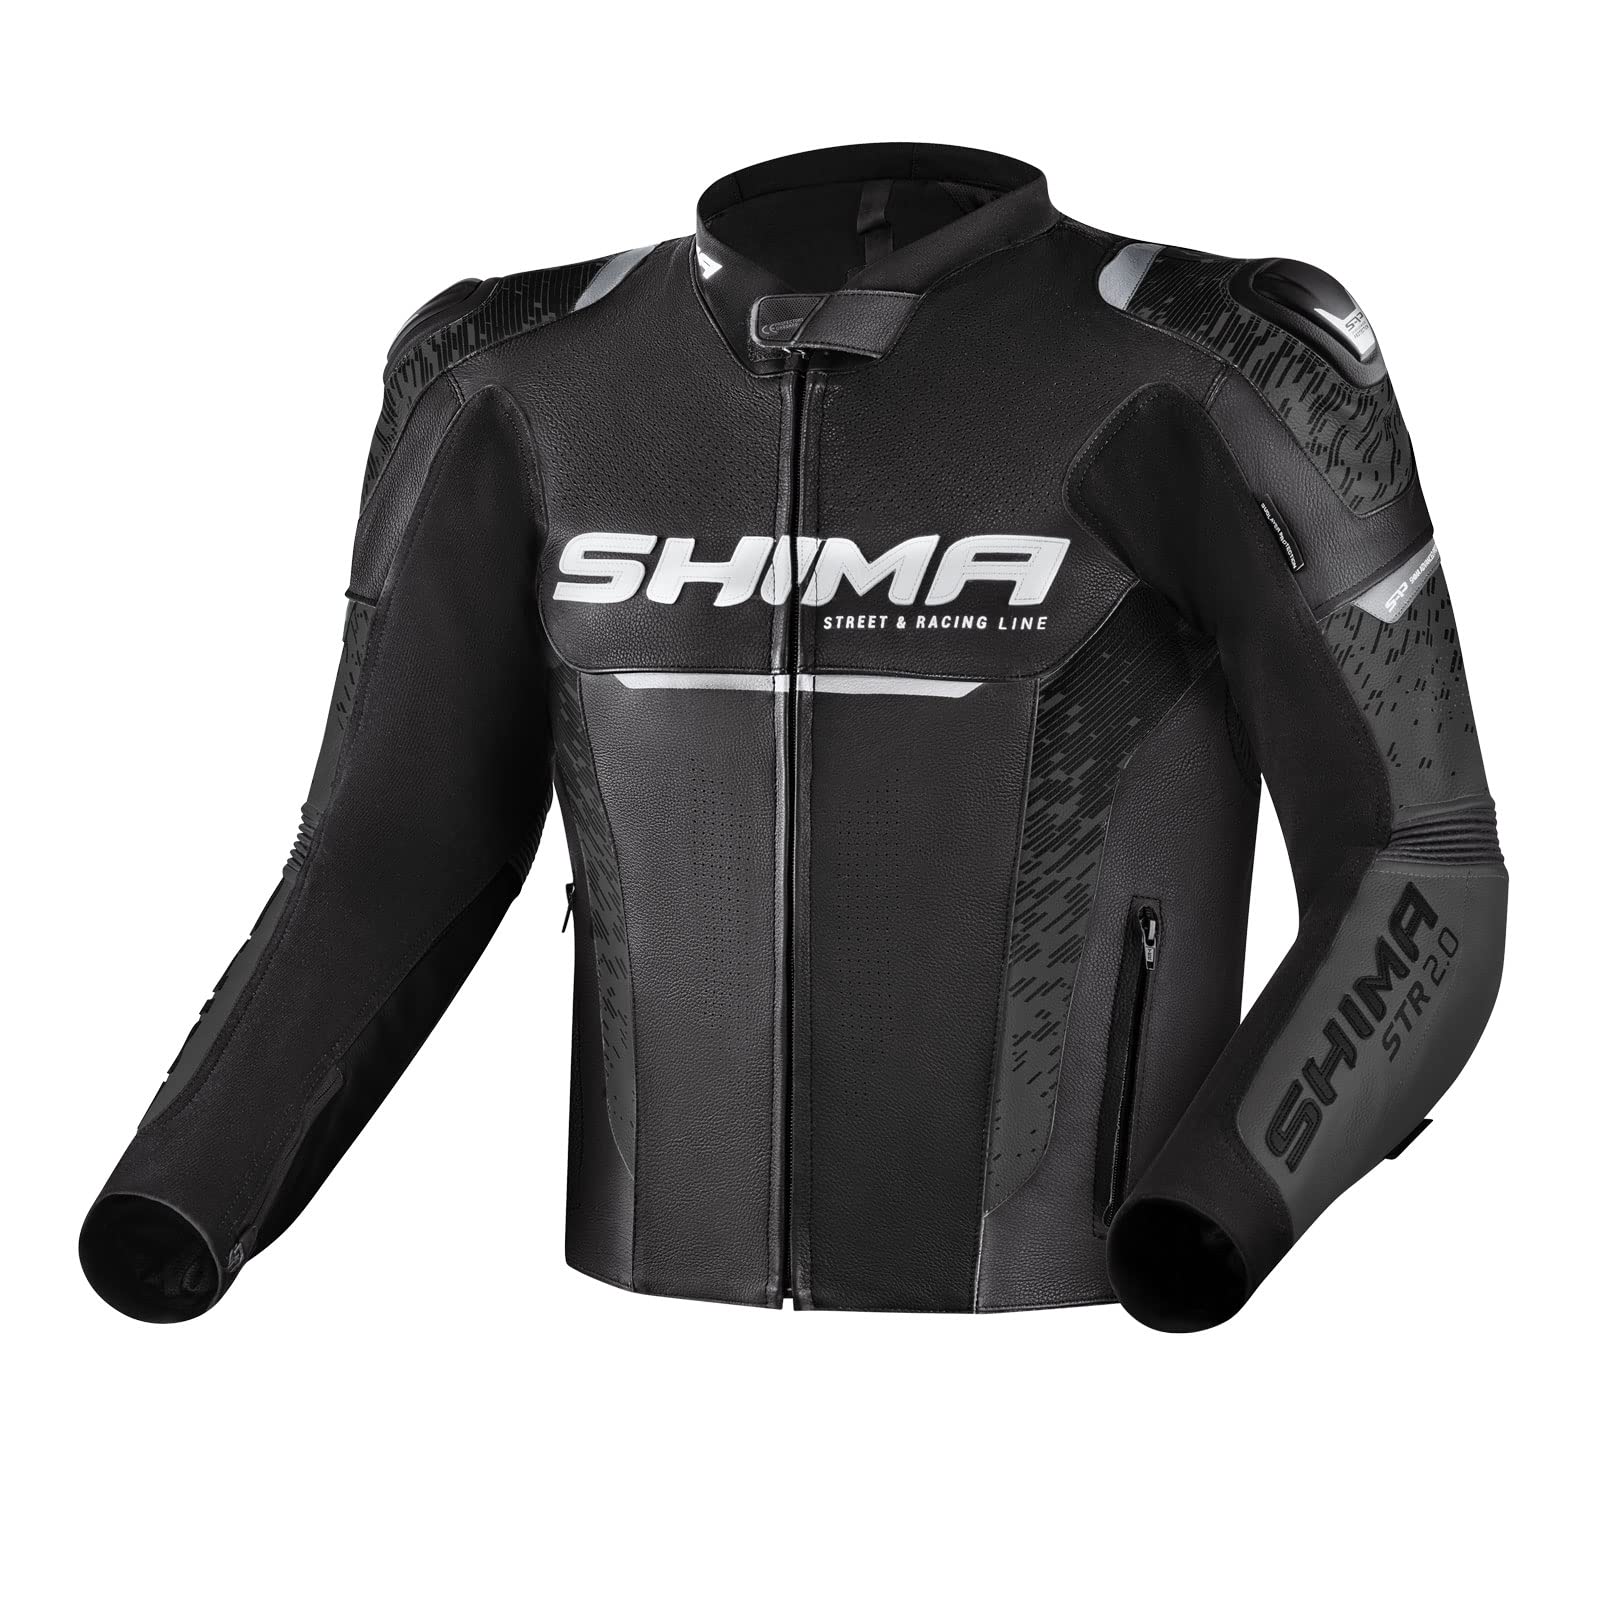 SHIMA STR 2.0 Motorradjacke - Leder, Sportjacke mit Rücken-, Ellbogen- und Schulterprotektoren, perforiertes Leder, für 2-teiligen Kombi (Schwarz, 48) von SHIMA